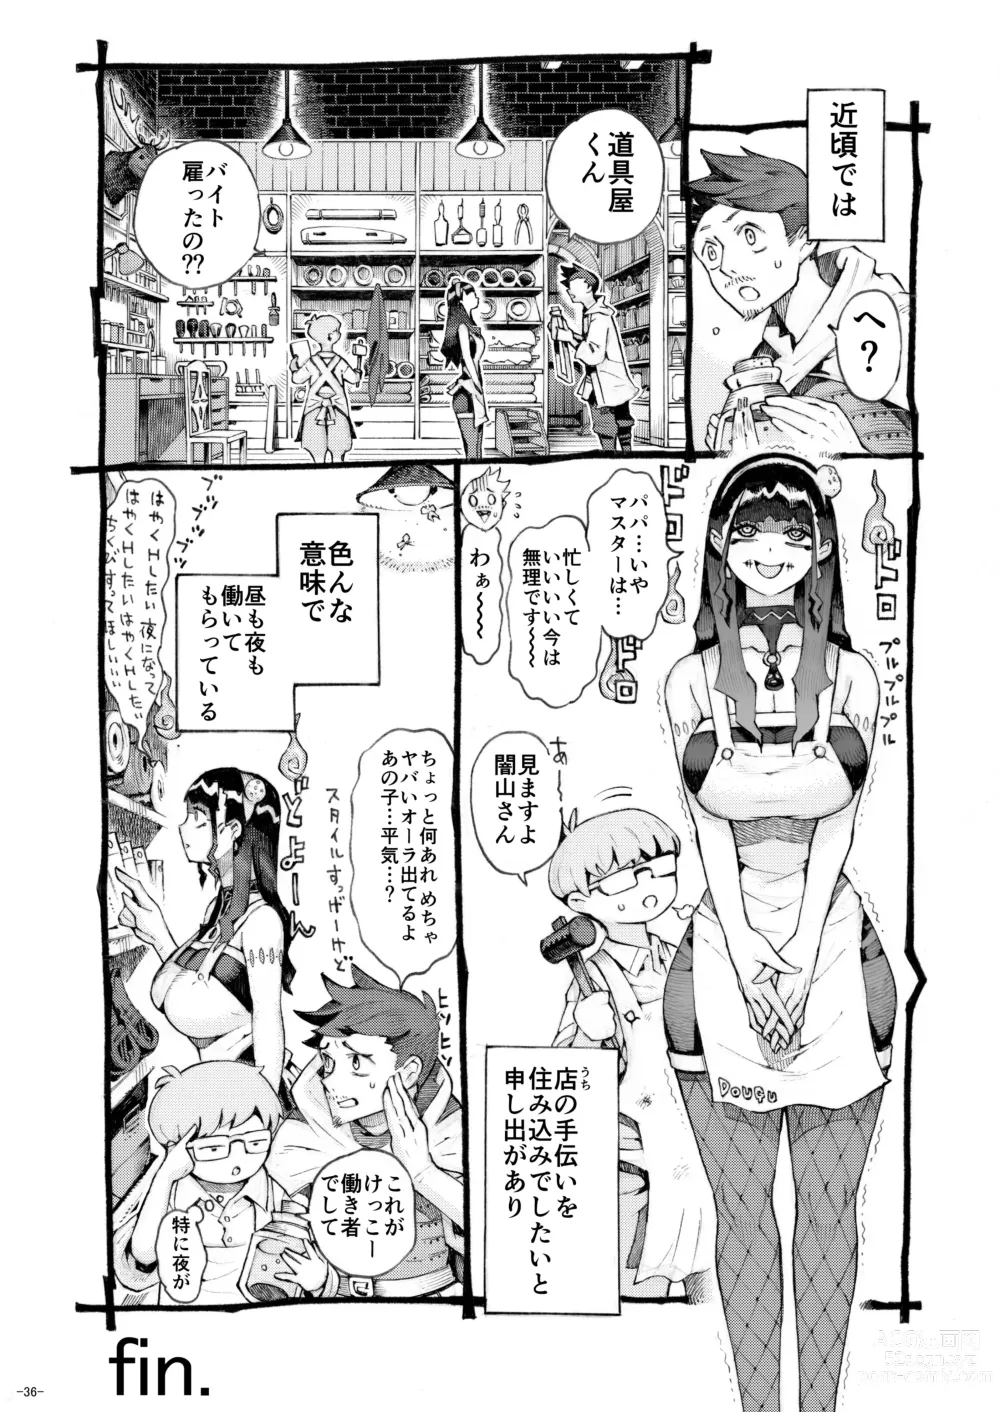 Page 36 of doujinshi Majutsushi Papakatsu Chuu 2